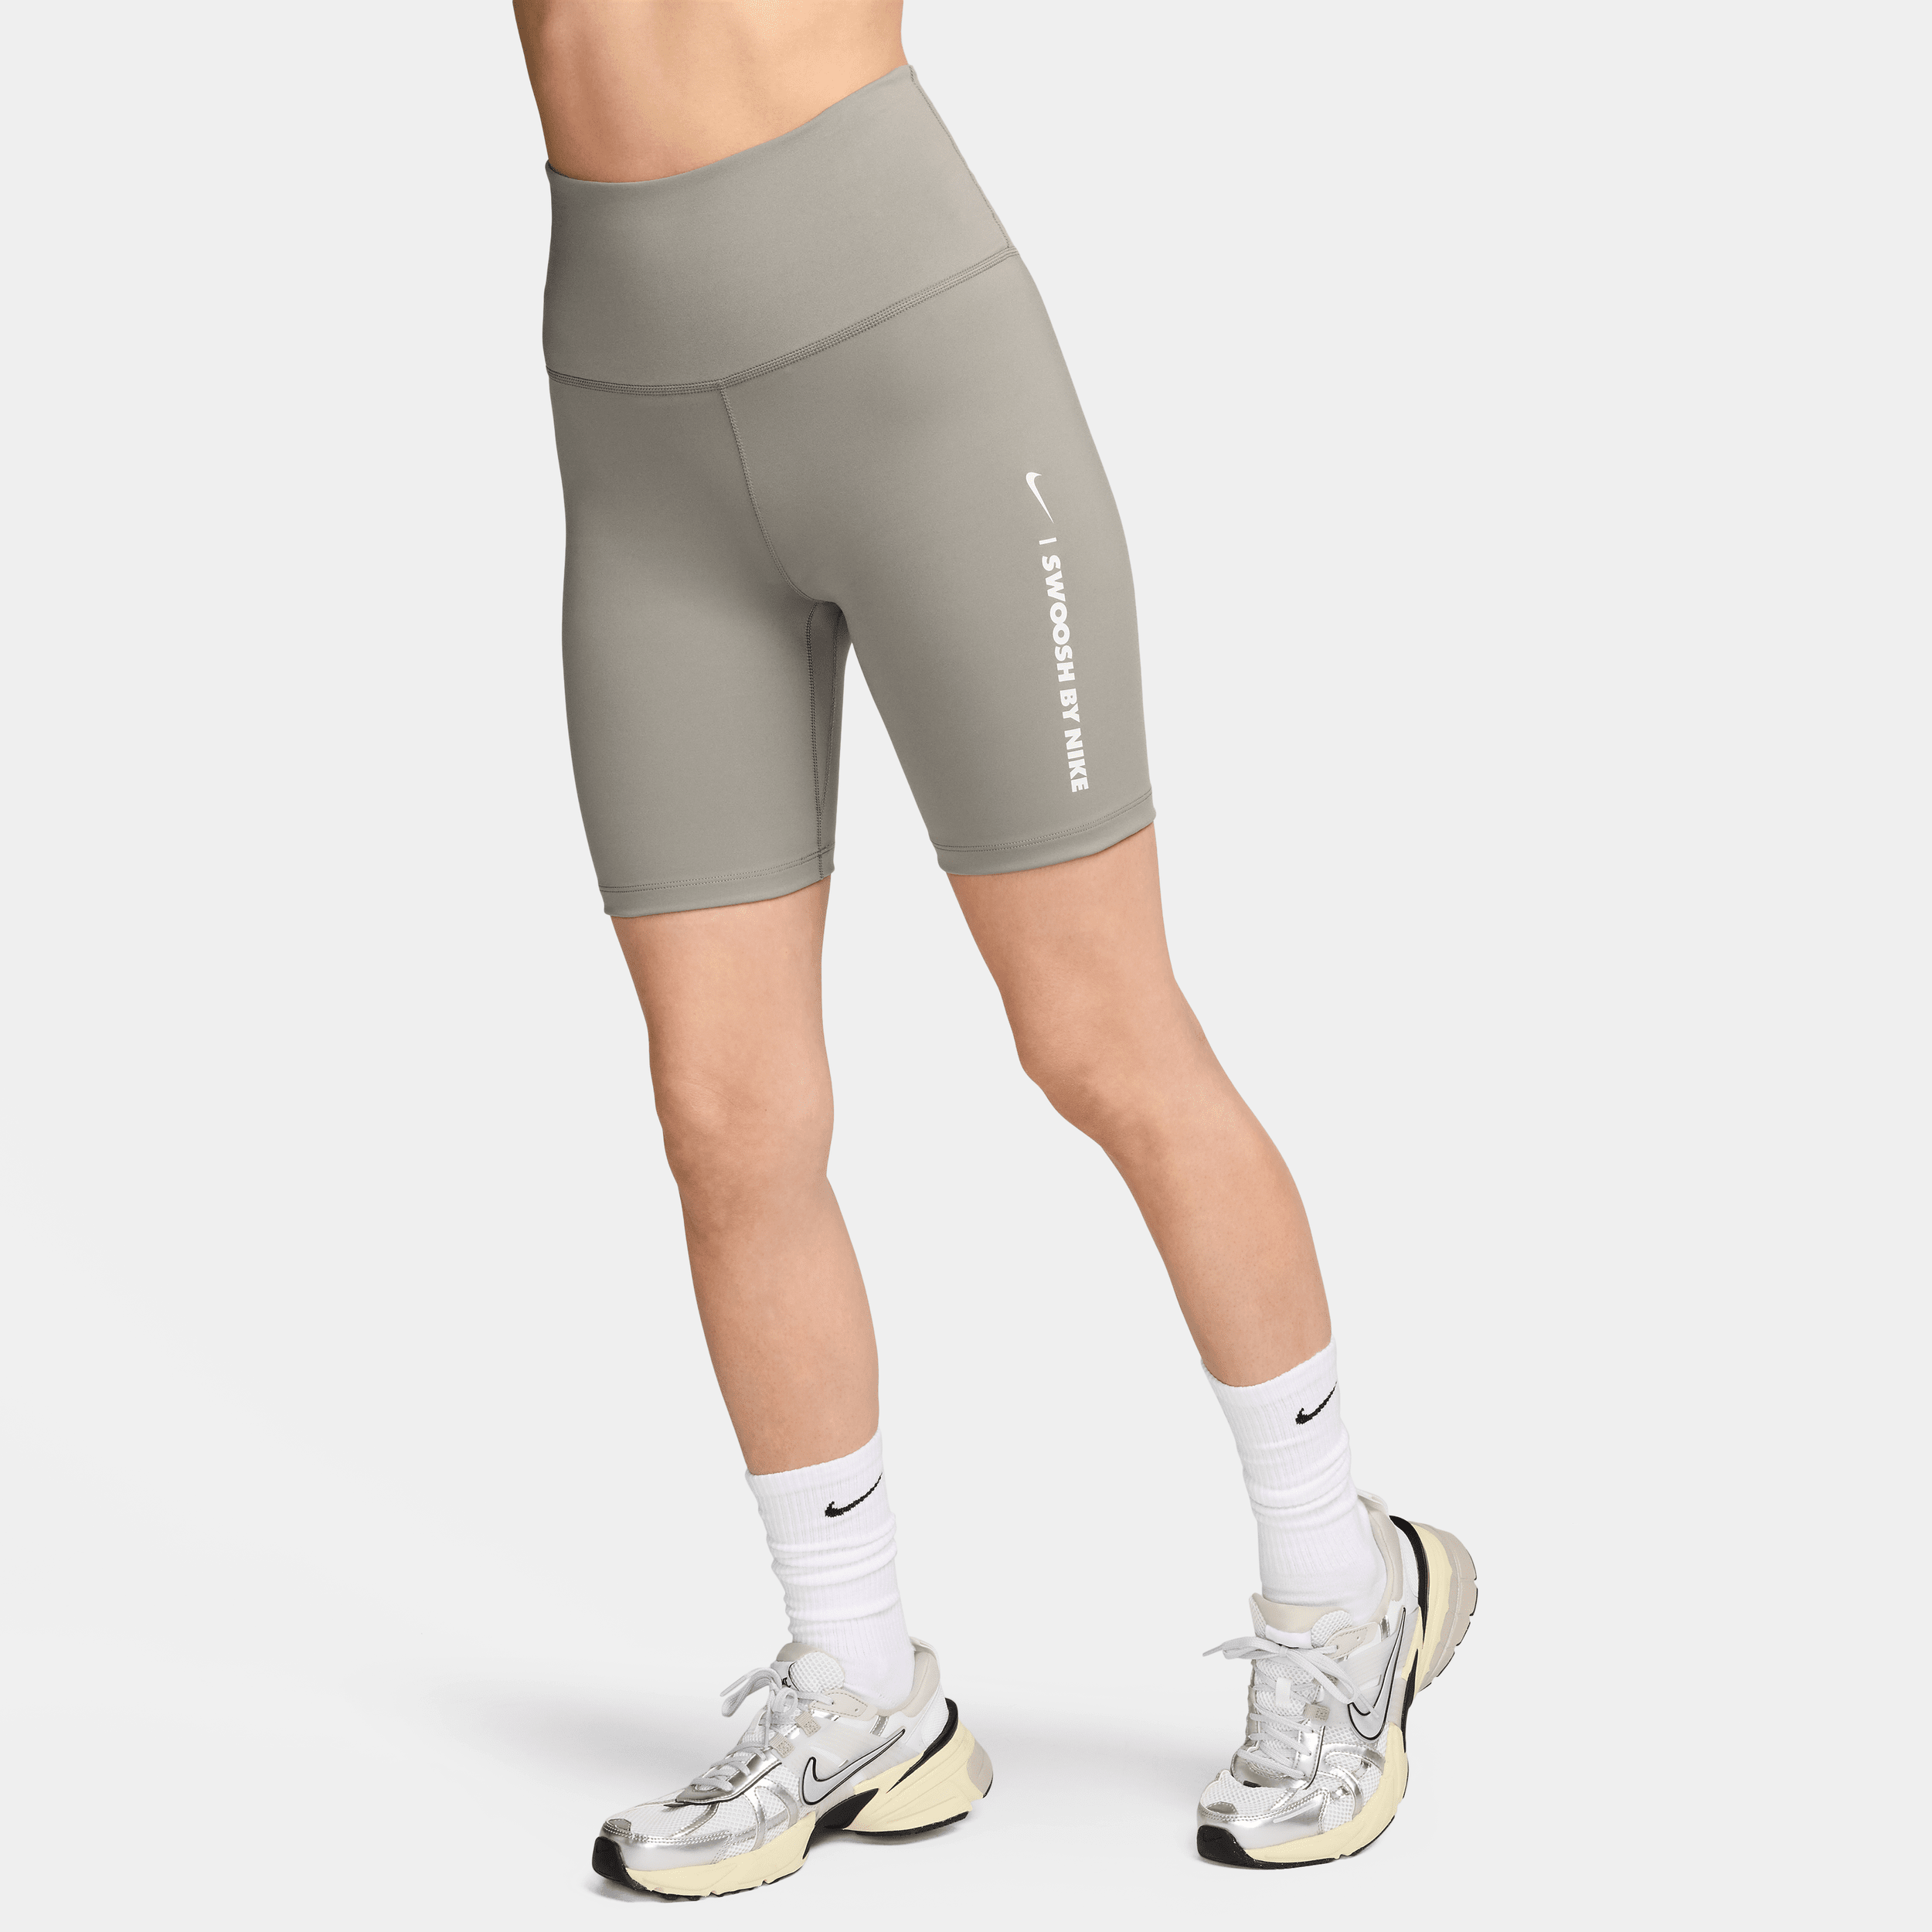 Højtaljede Nike One-cykelshorts (18 cm) til kvinder - grå